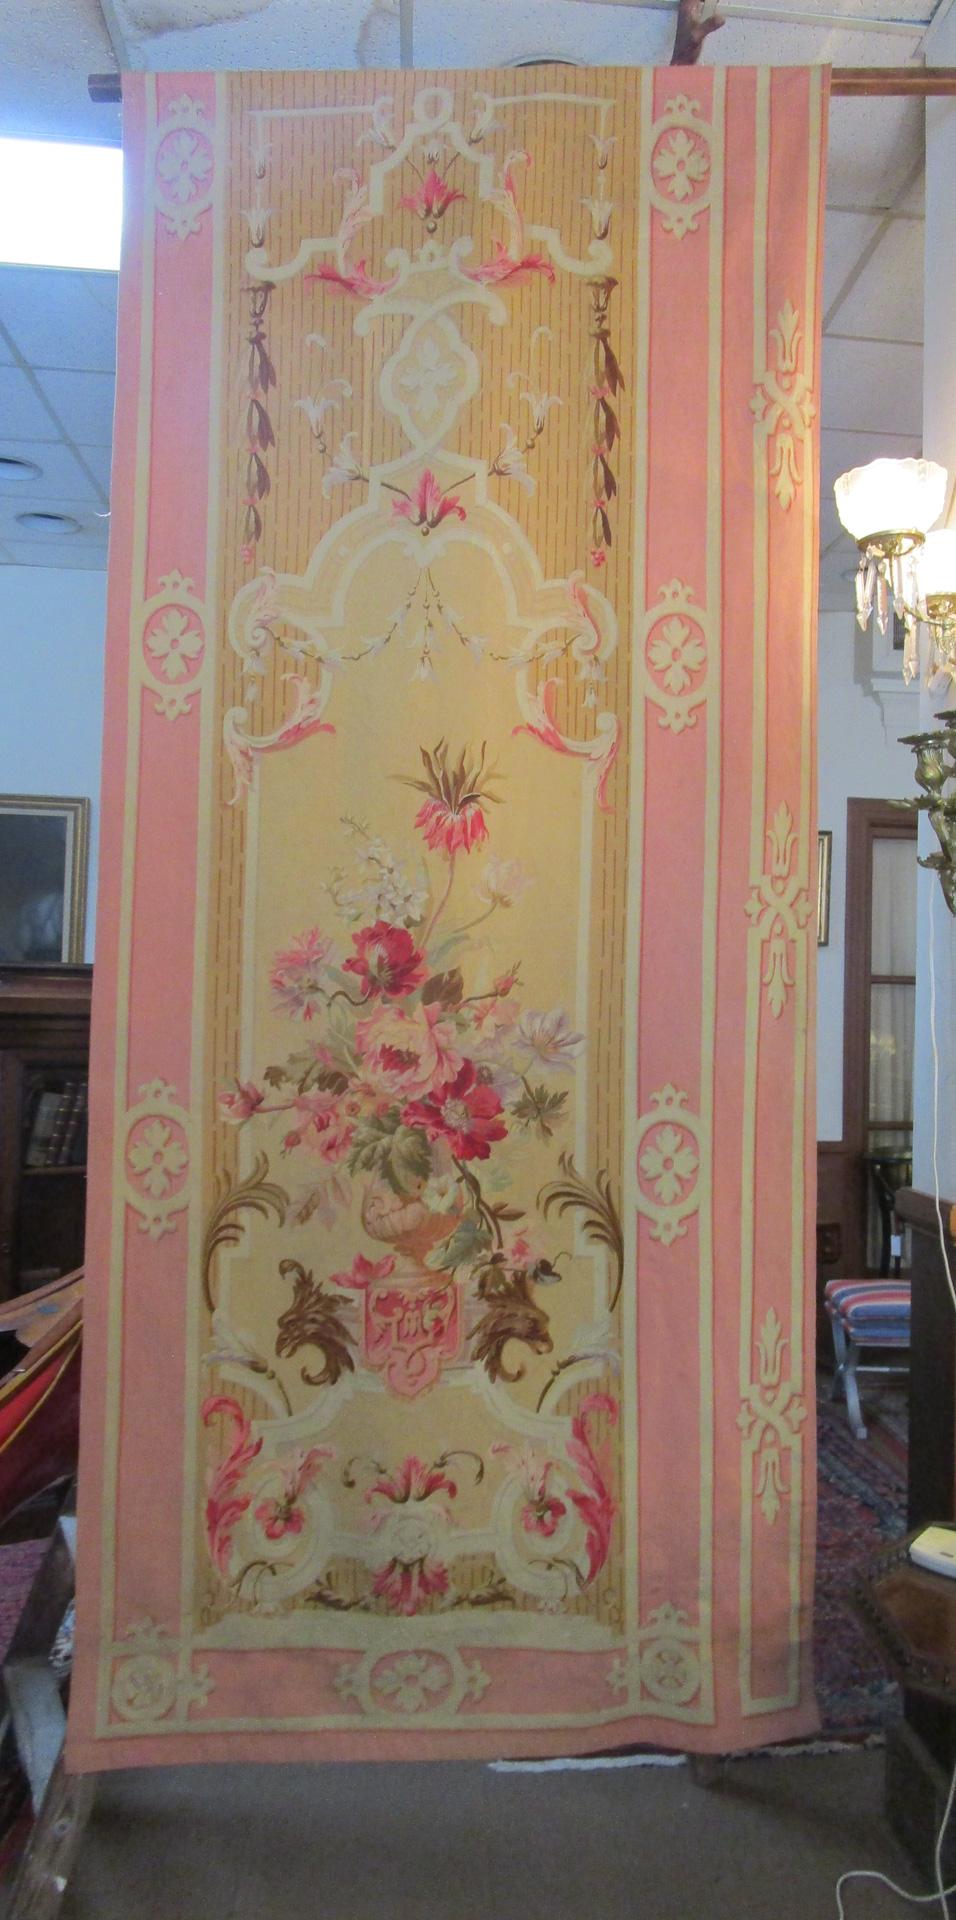 Ein schönes Paar Aubusson-Wandteppiche aus der Mitte des 19. Jahrhunderts, die zum Aufhängen zwischen Fenstern oder Türen gedacht waren und als Entre Fenetre-Paneele bekannt sind. Handgewoben aus Wolle mit Seide Highlights, diese goreous Paar zeigt